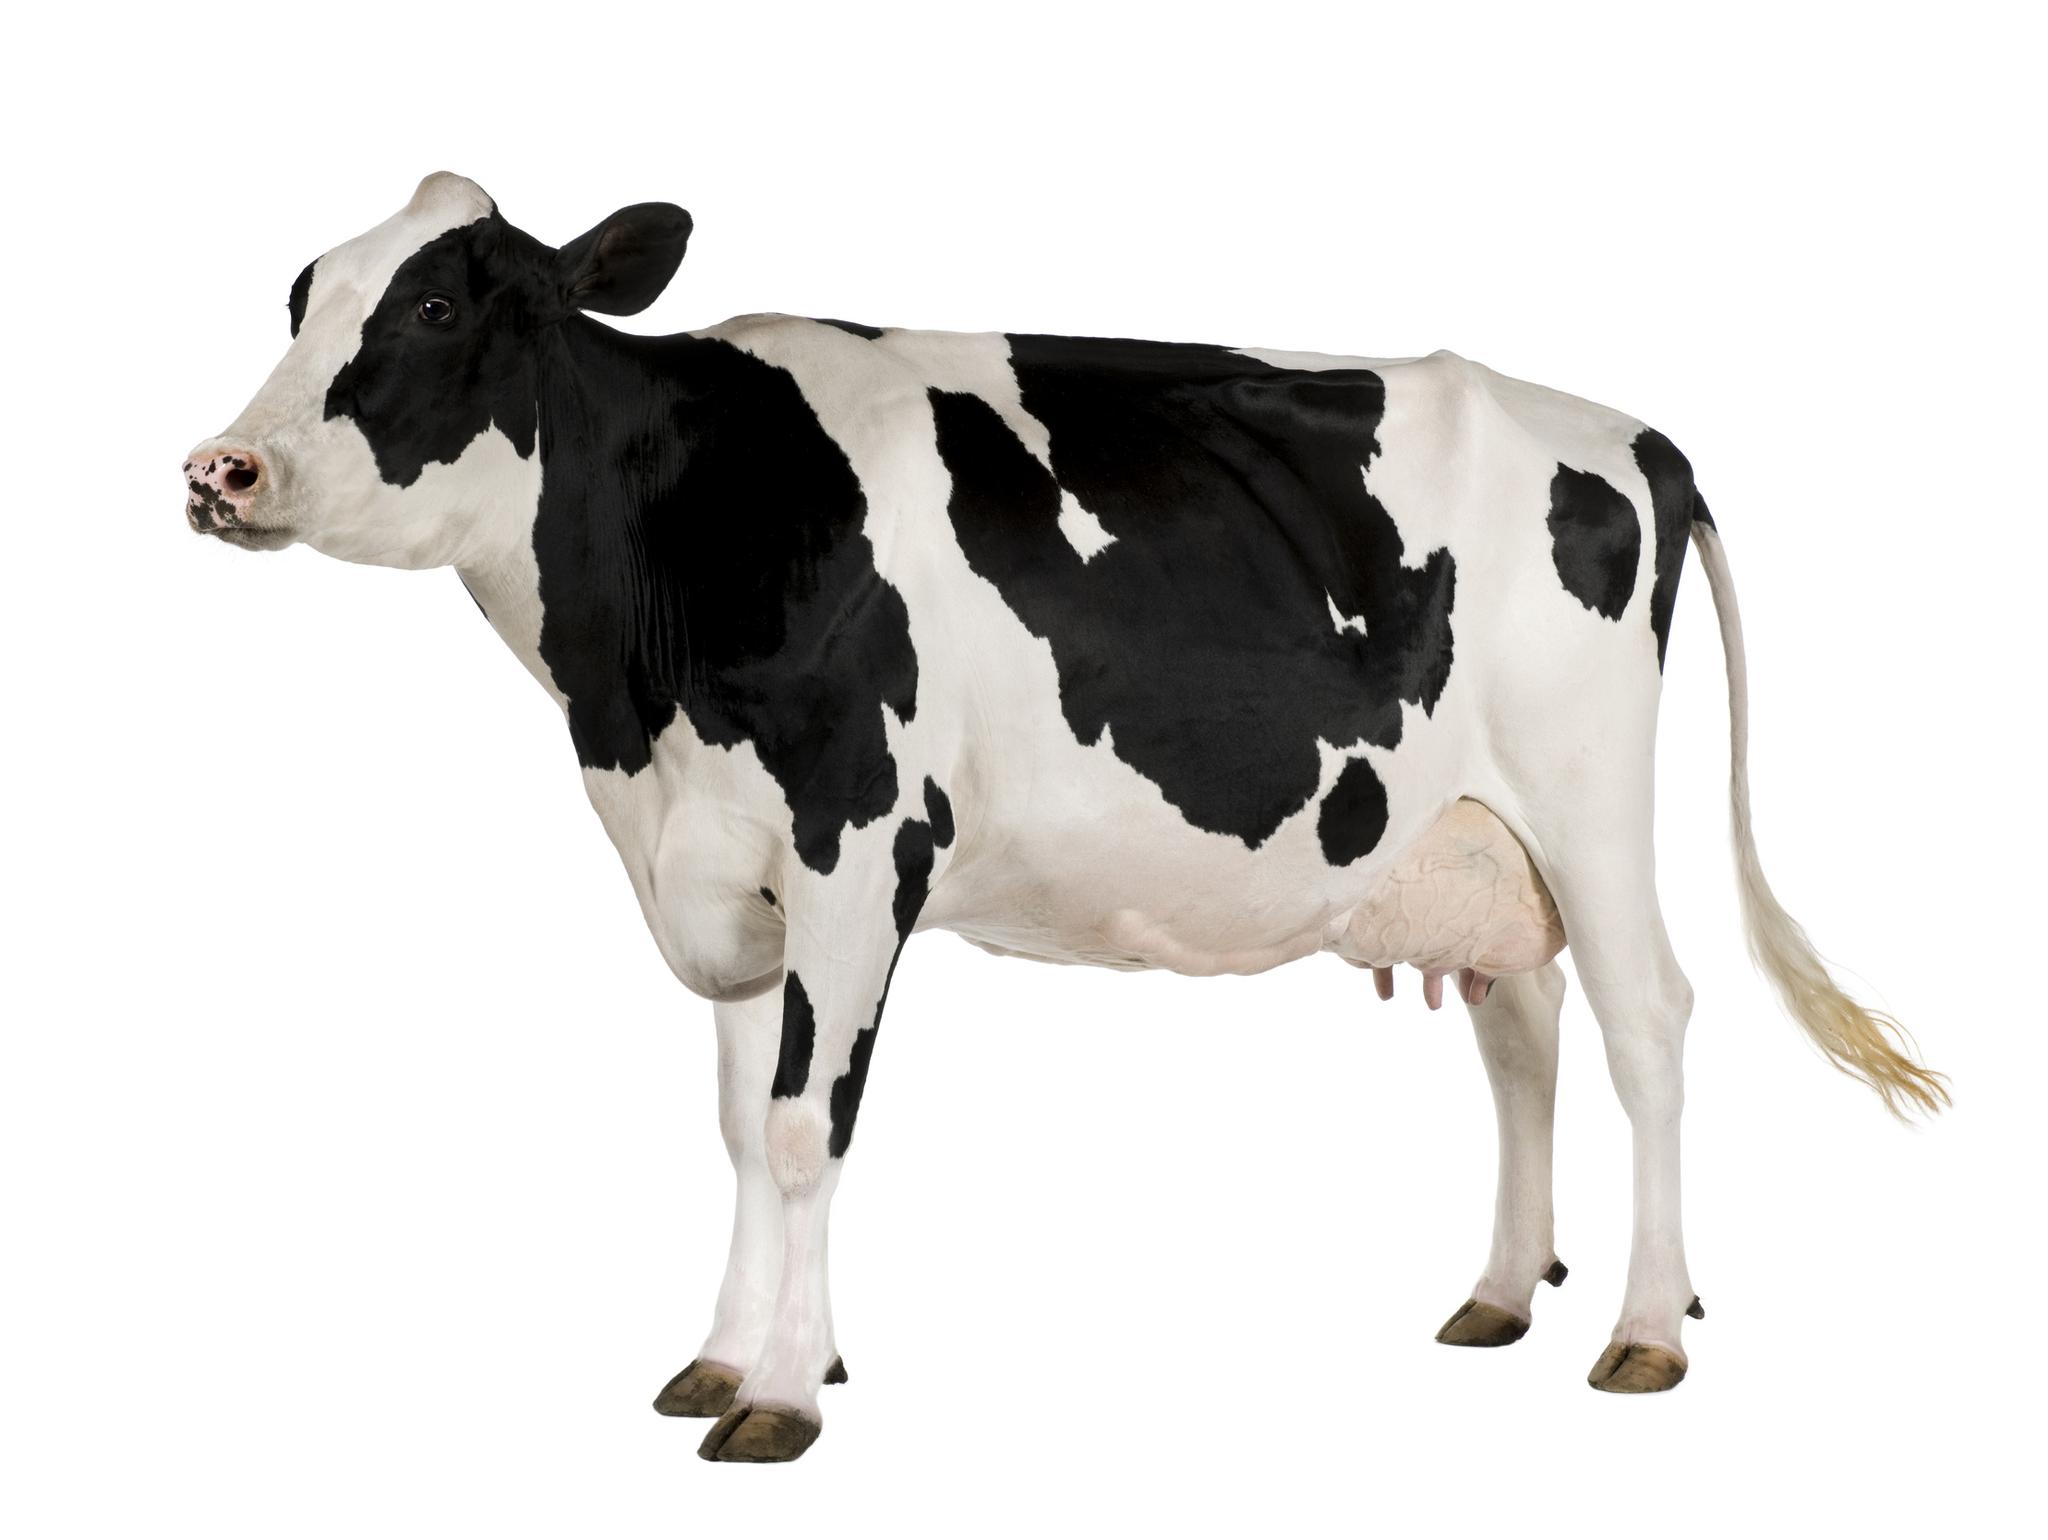 Holstein friesian cow feeding